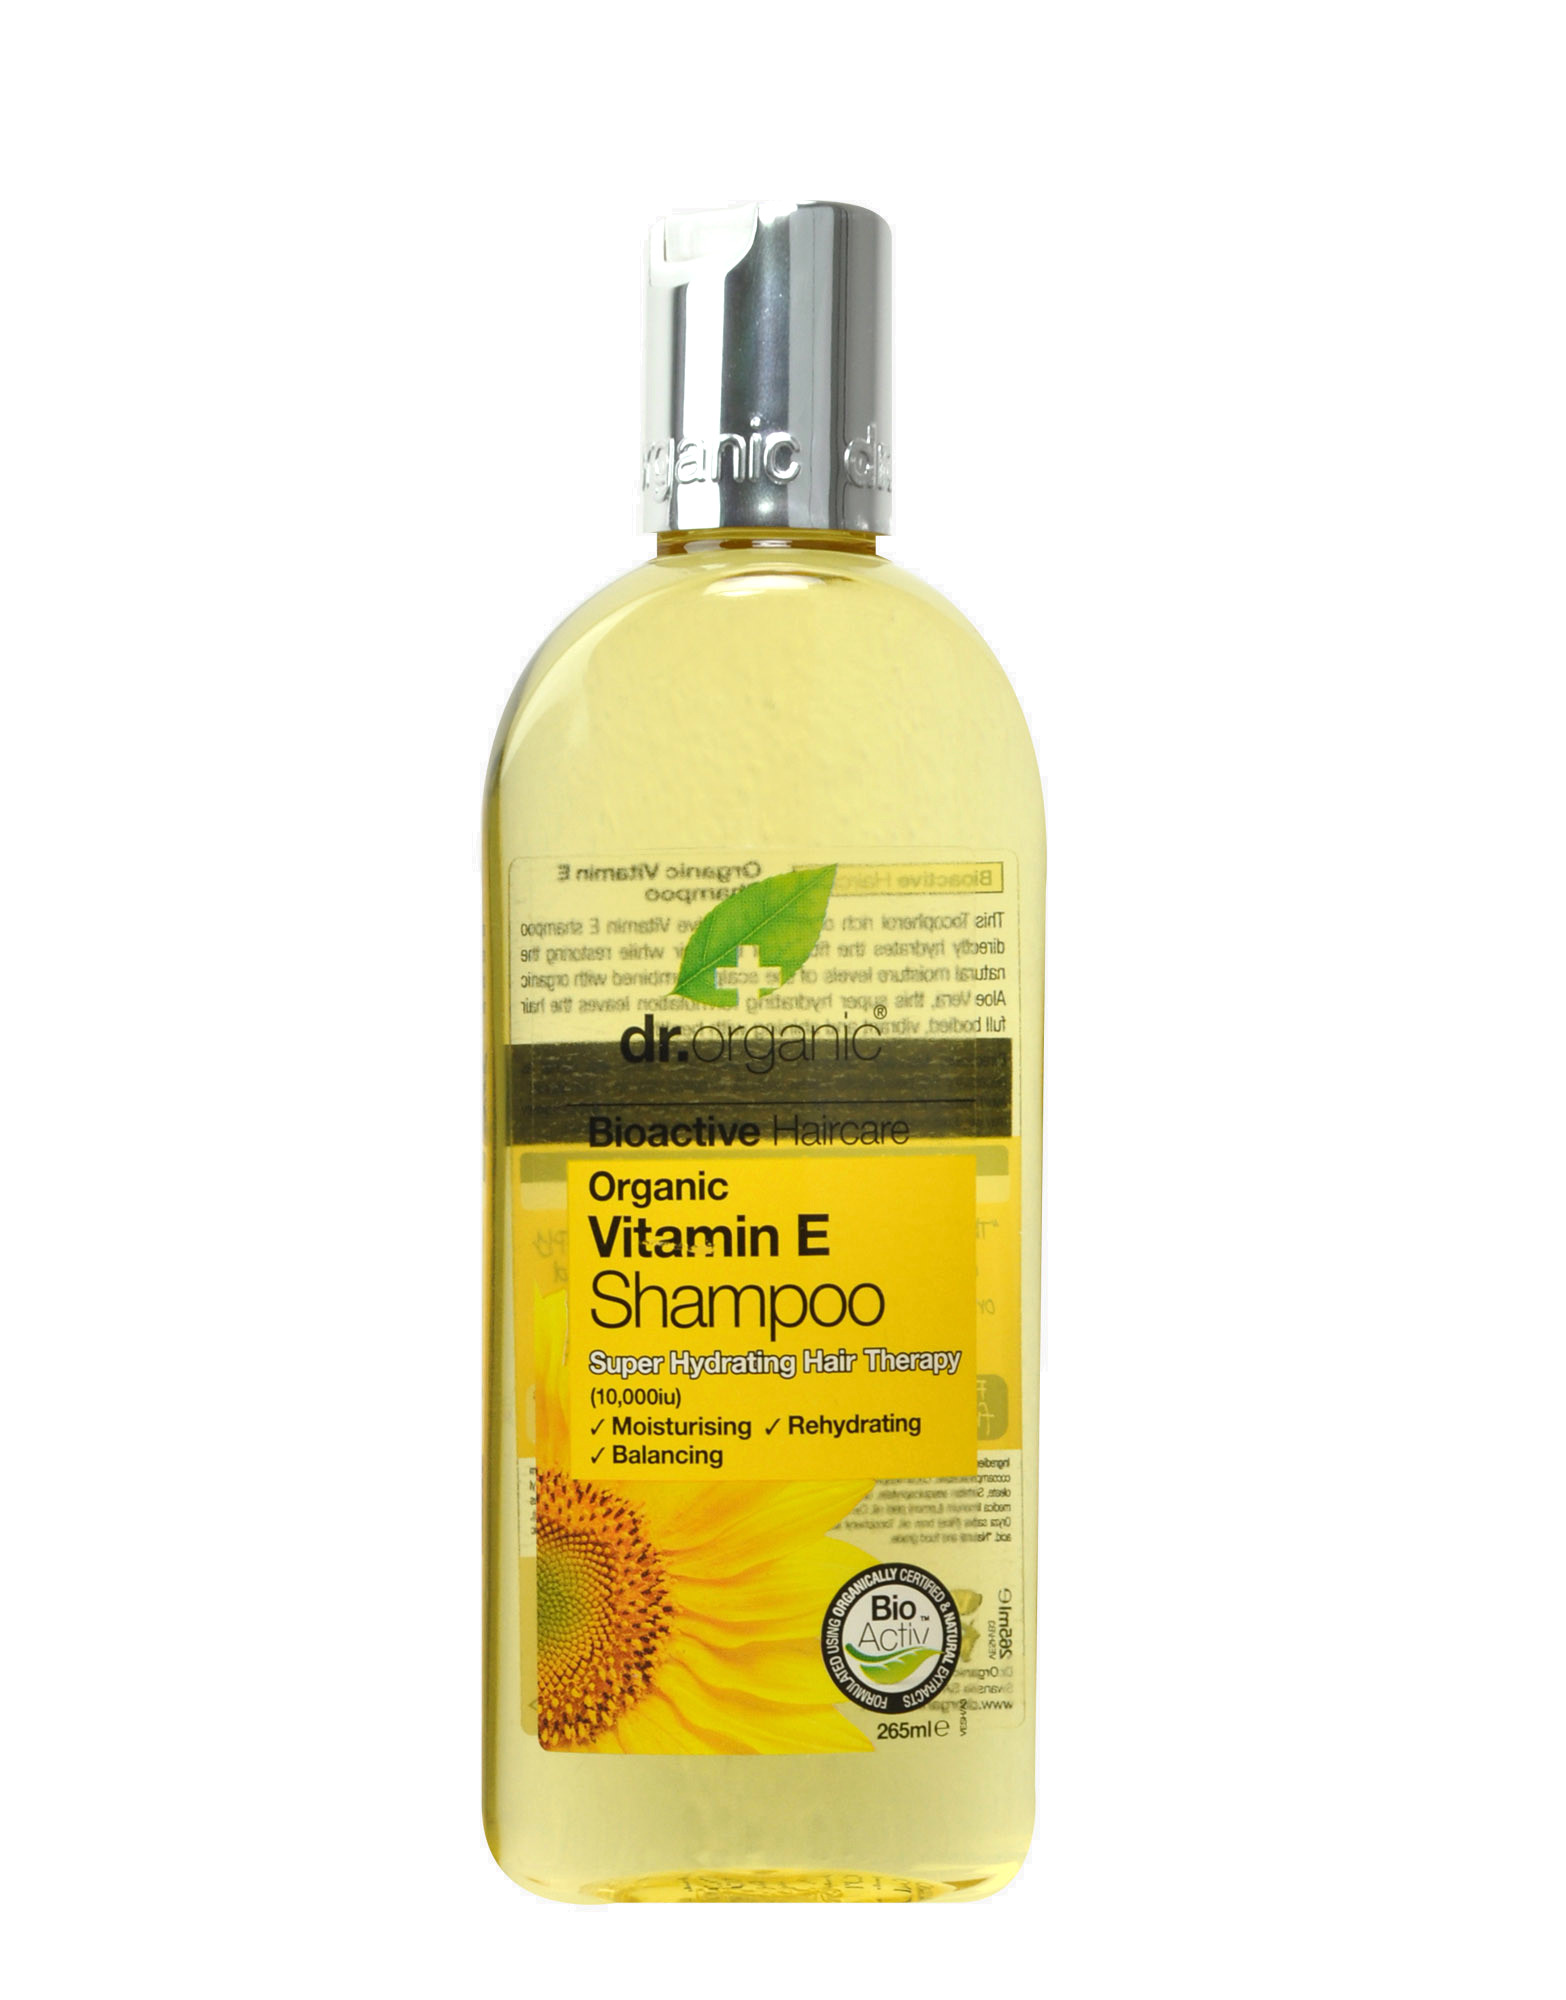 Organic Vitamin E - Shampoo by DR. (265ml)